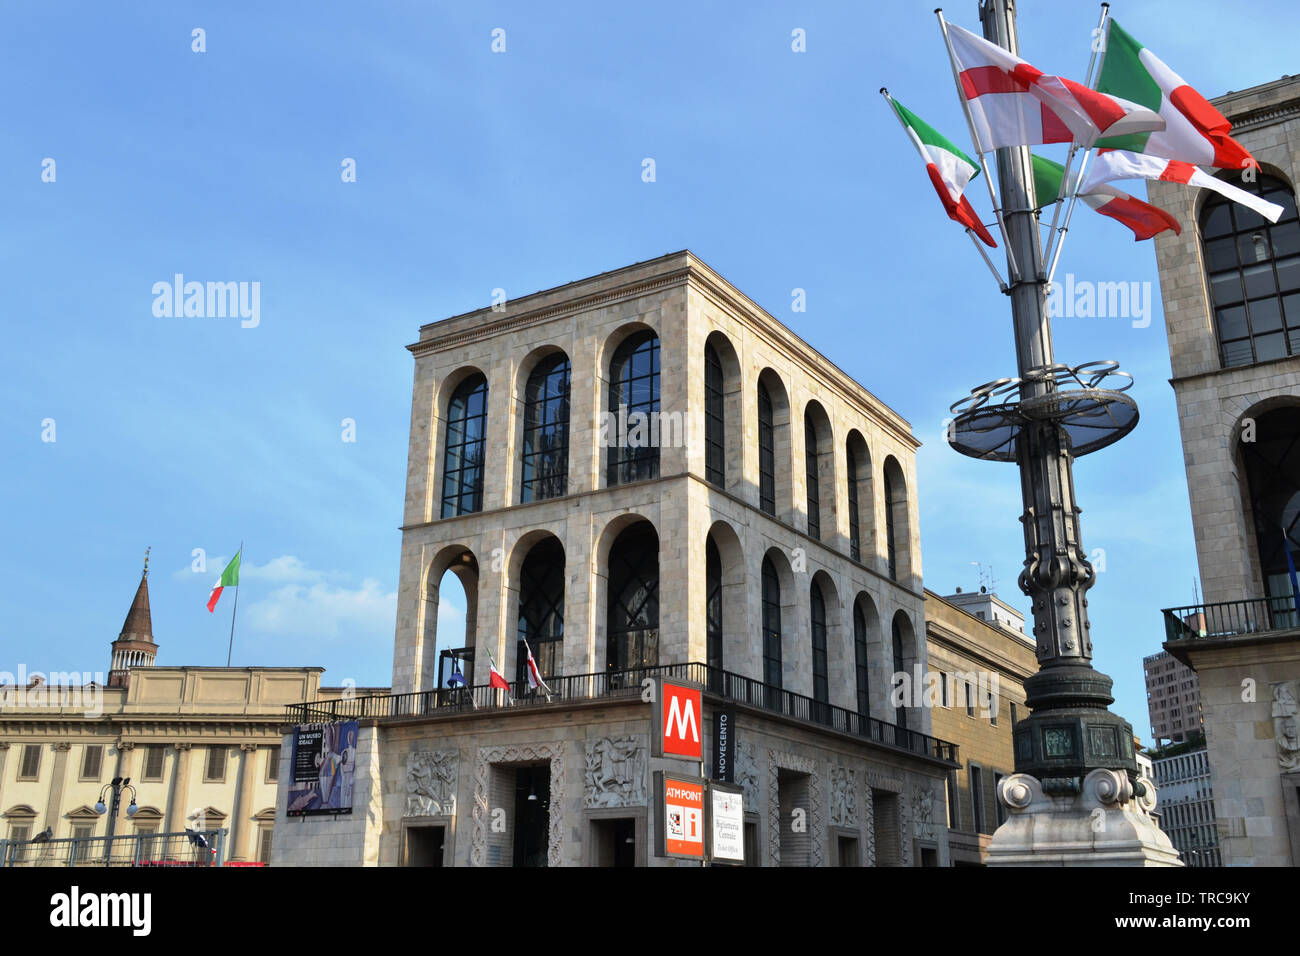 Milan/Italia - Junio 1, 2015: Vista del Palacio Real, el museo del siglo XIX y un mástil con banderas en la plaza del Duomo en un día soleado de verano. Foto de stock